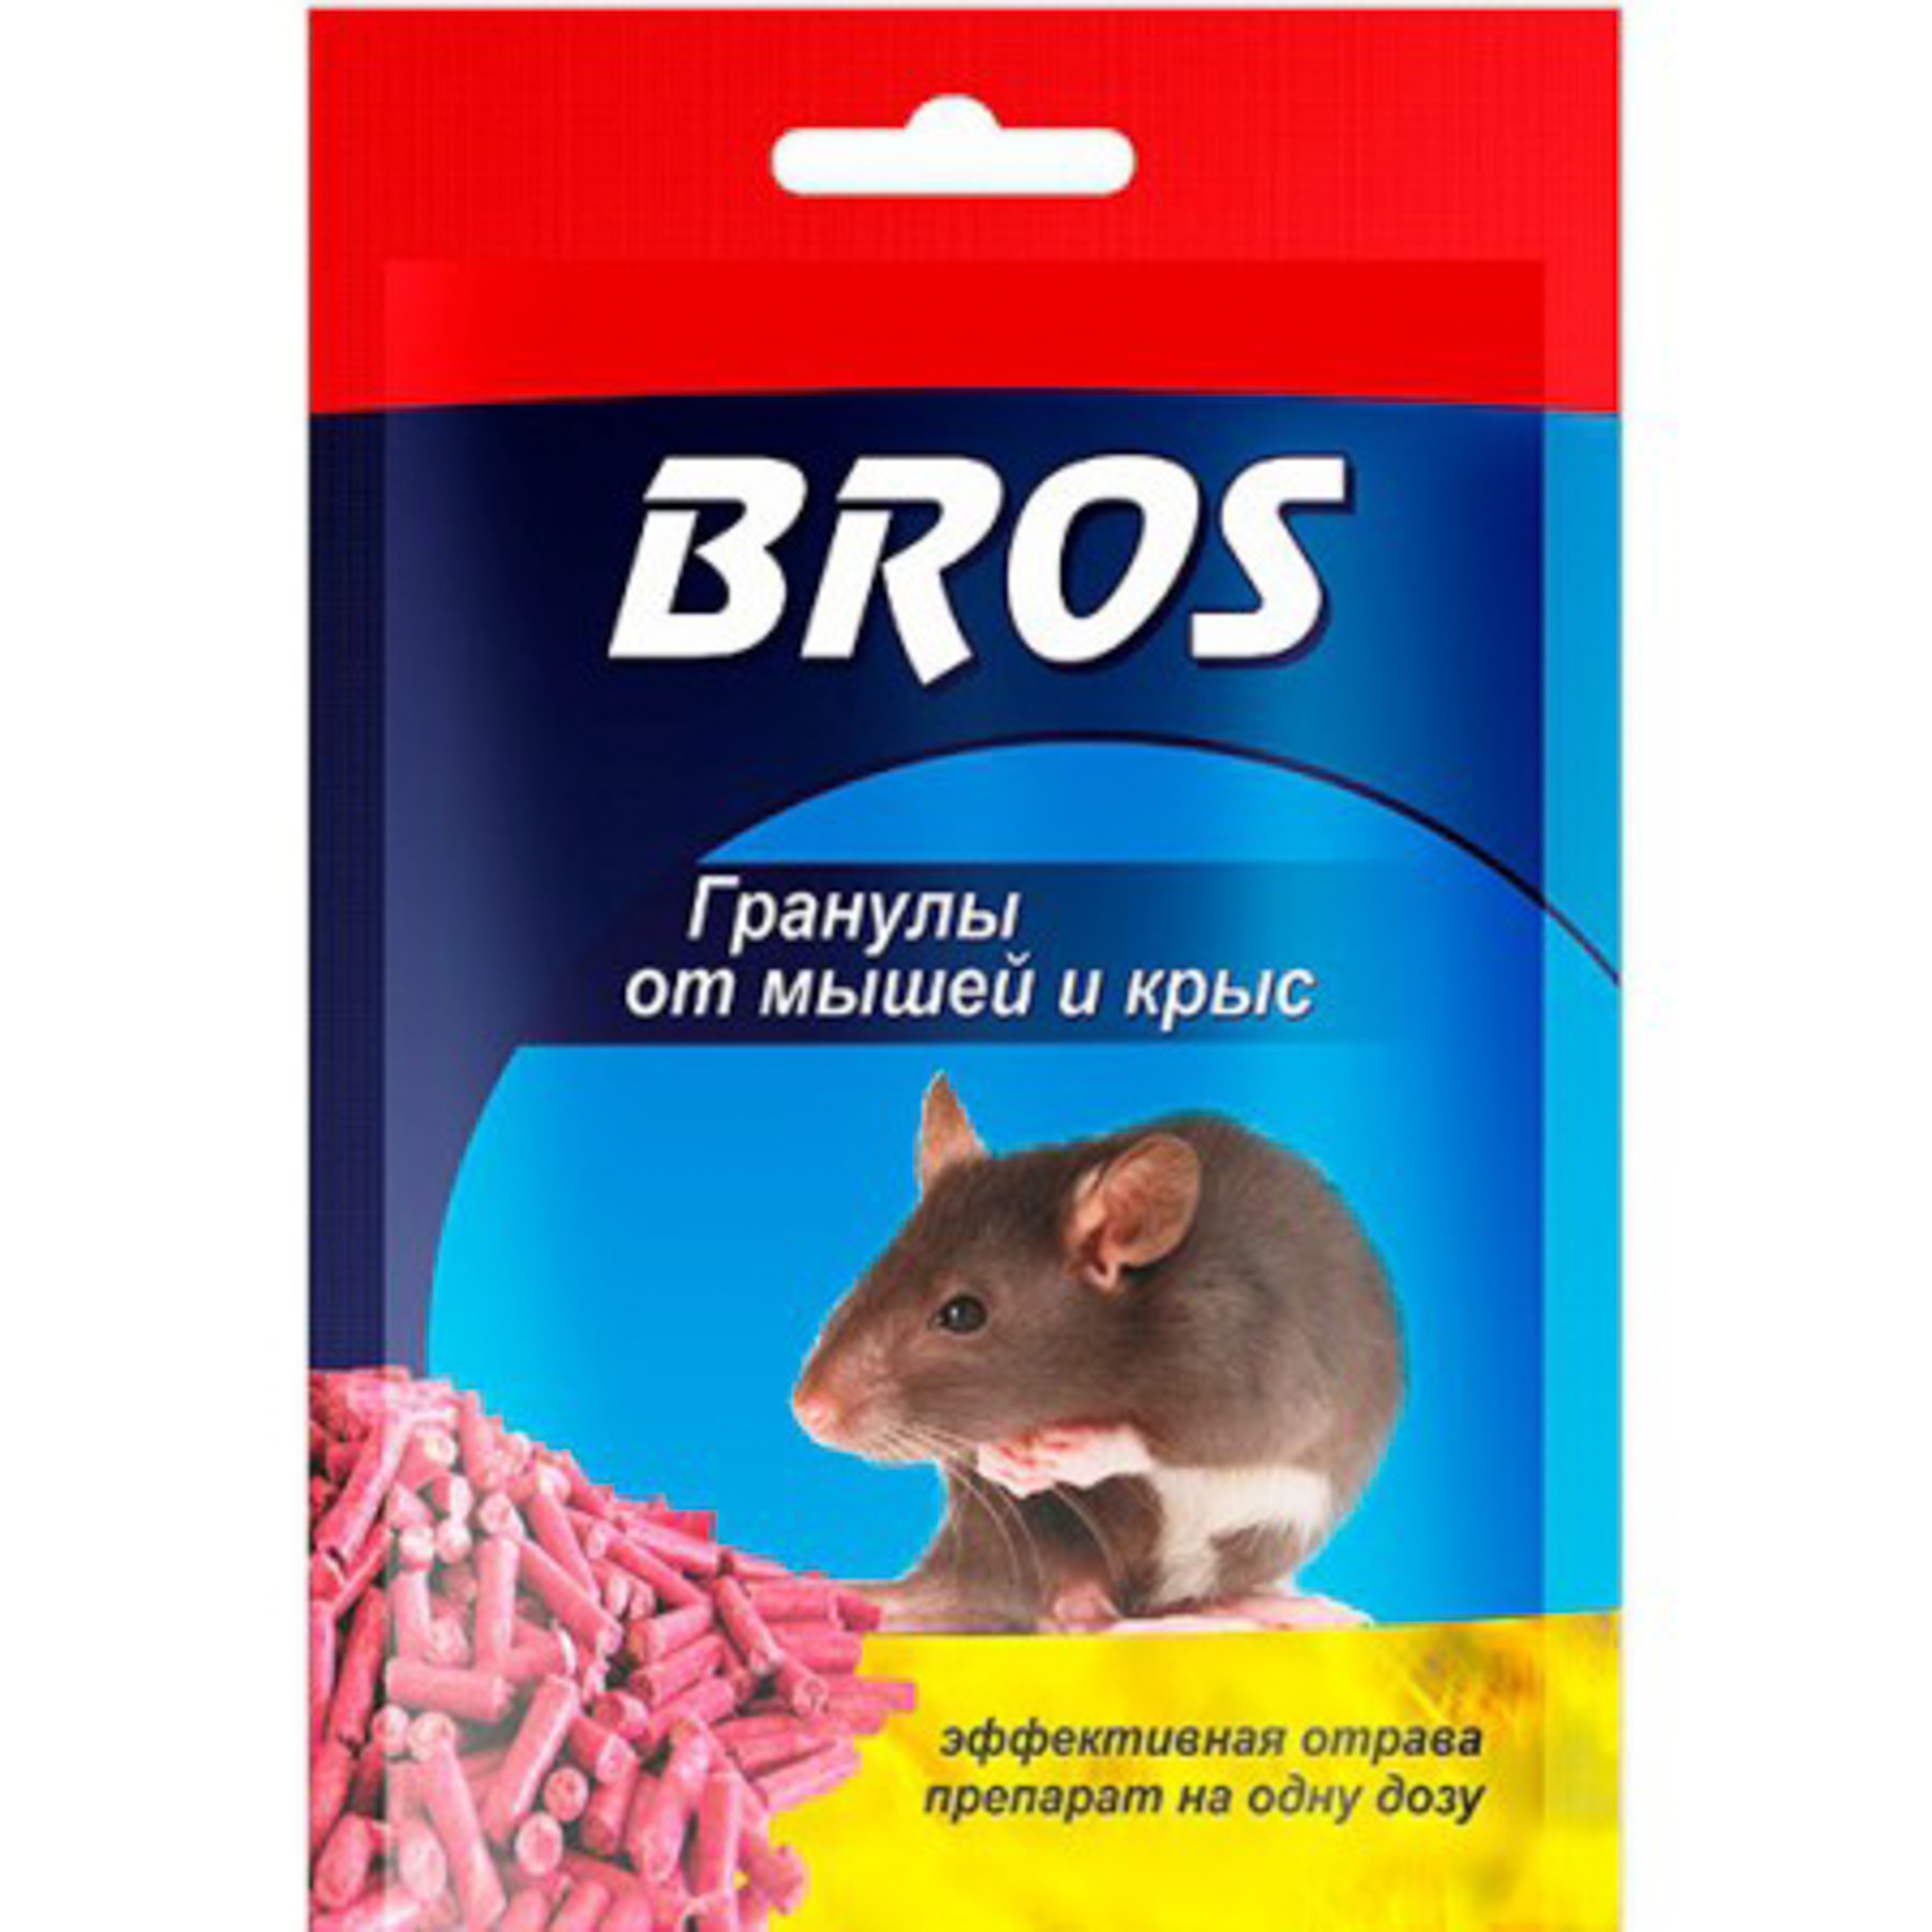 Гранулы BROS от крыс и мышей в пакетике 90 г гранулы от грызунов грызунофф